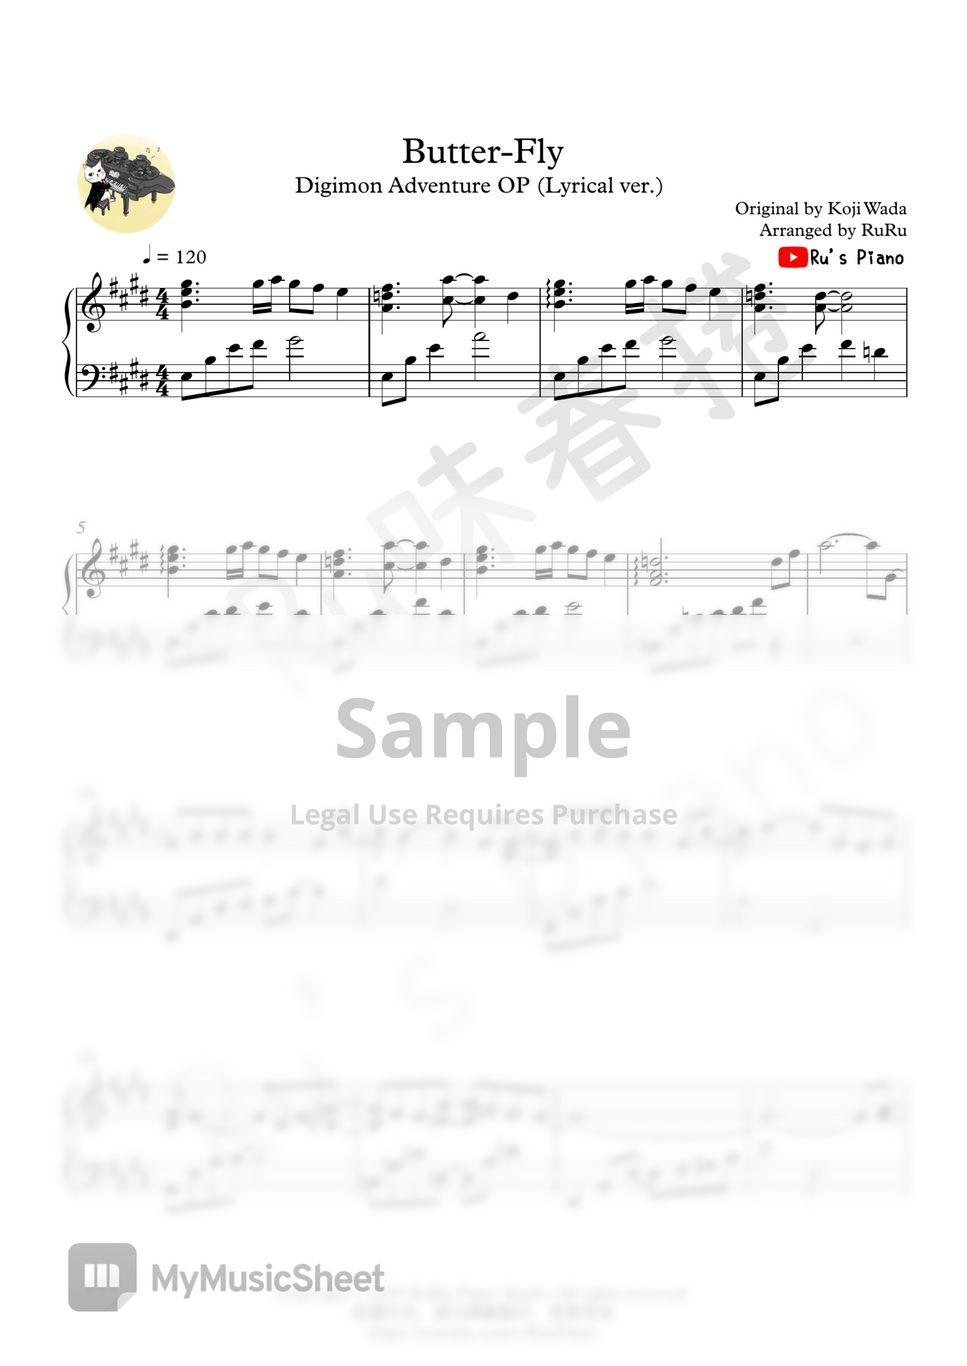 數碼寶貝 Digimon Adventure OP1 - Butter-Fly (Lyrical ver.) by Ru's Piano